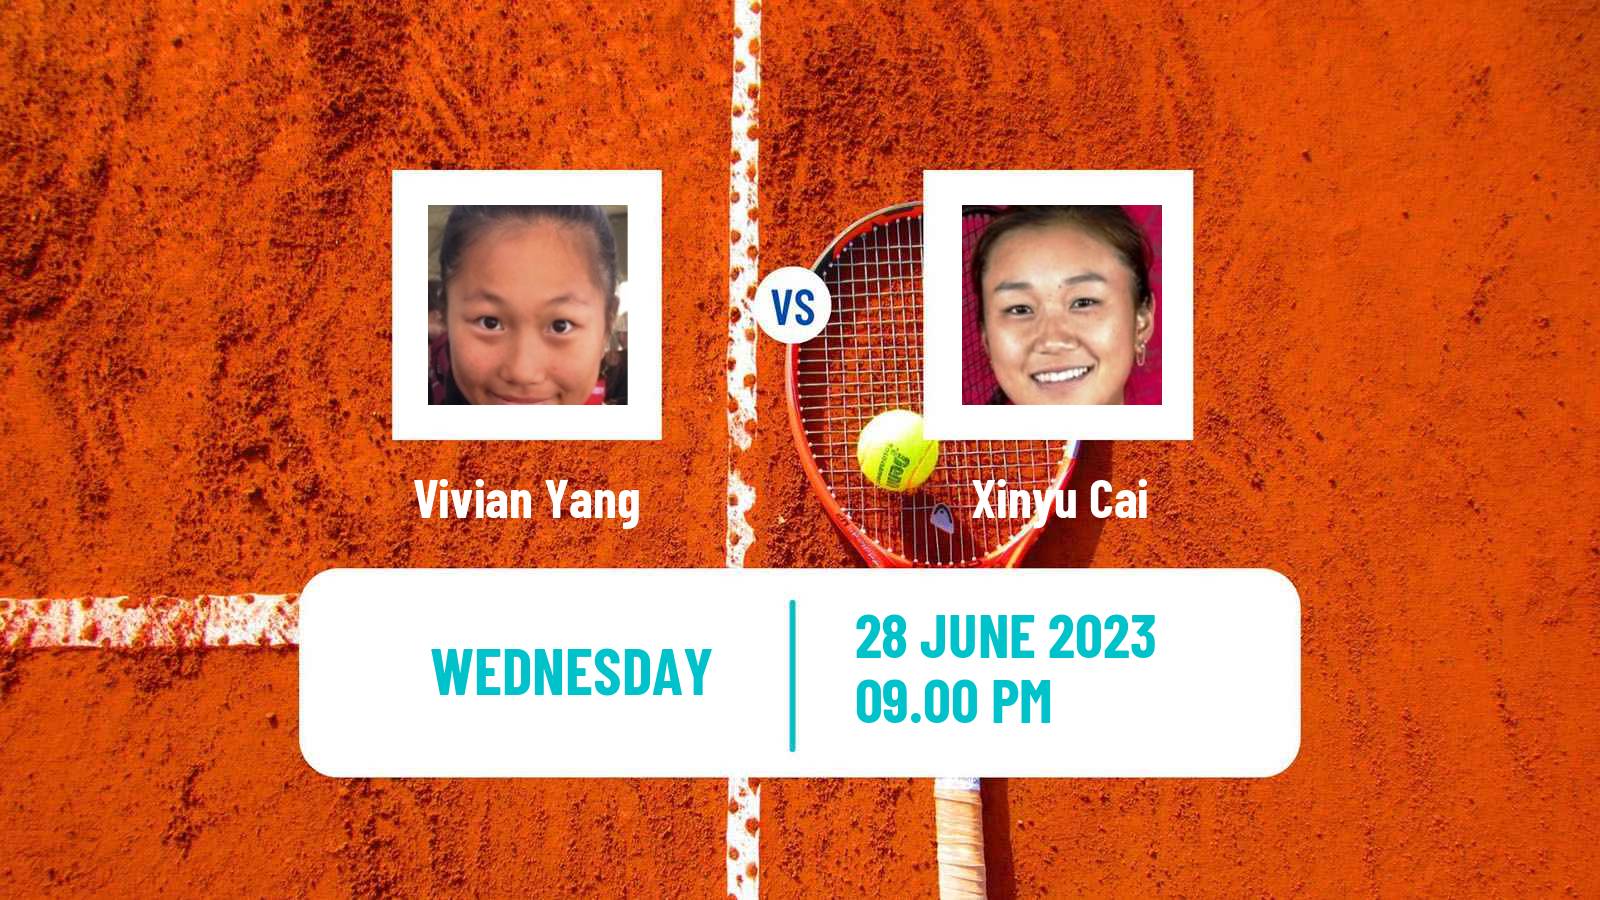 Tennis ITF W15 Tianjin 3 Women Vivian Yang - Xinyu Cai